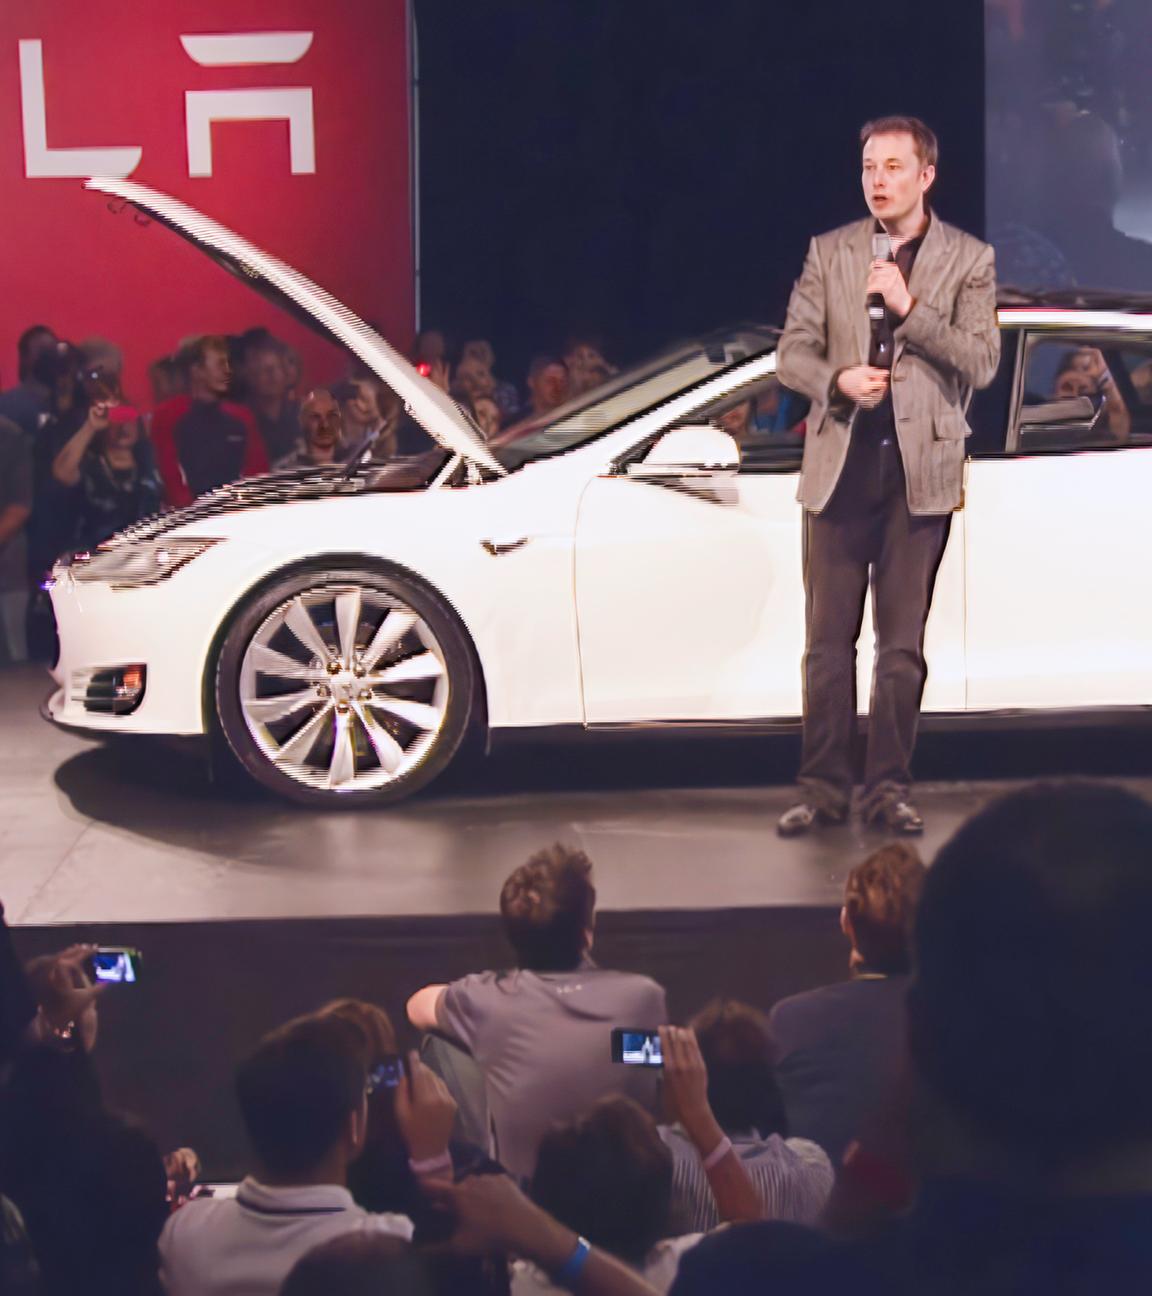 Elon Musk steht auf einer Bühne vor einem weißen Auto. Um die Bühne herum befinden sich eine Vielzahl von Menschen.